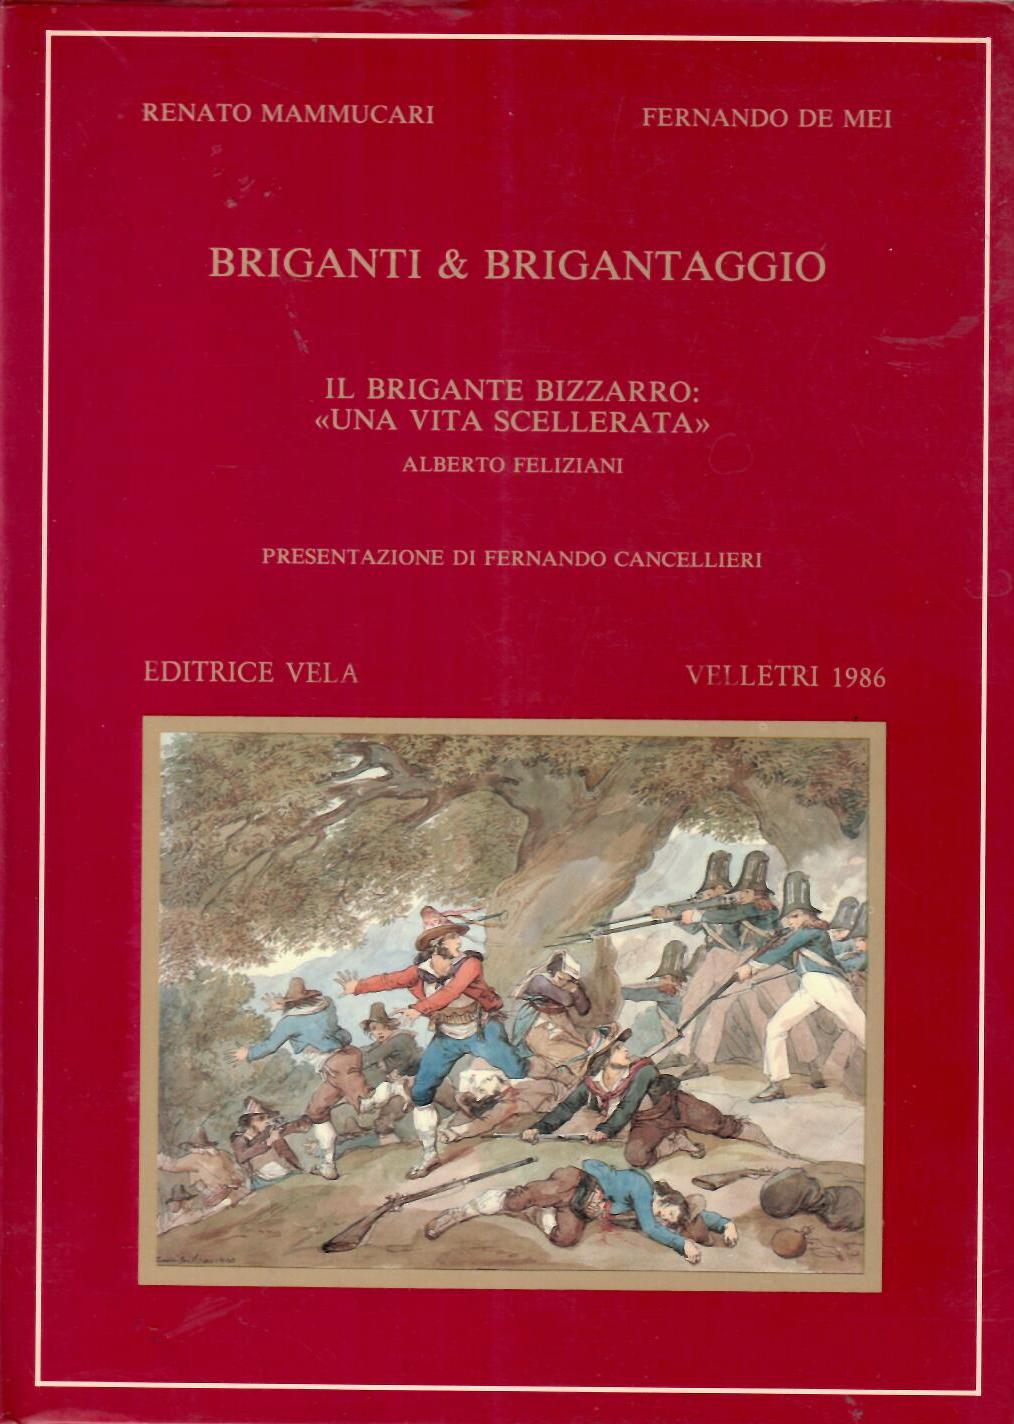 Briganti & Brigantaggio. Il brigante Bizzarro: “Una vita scellerata”